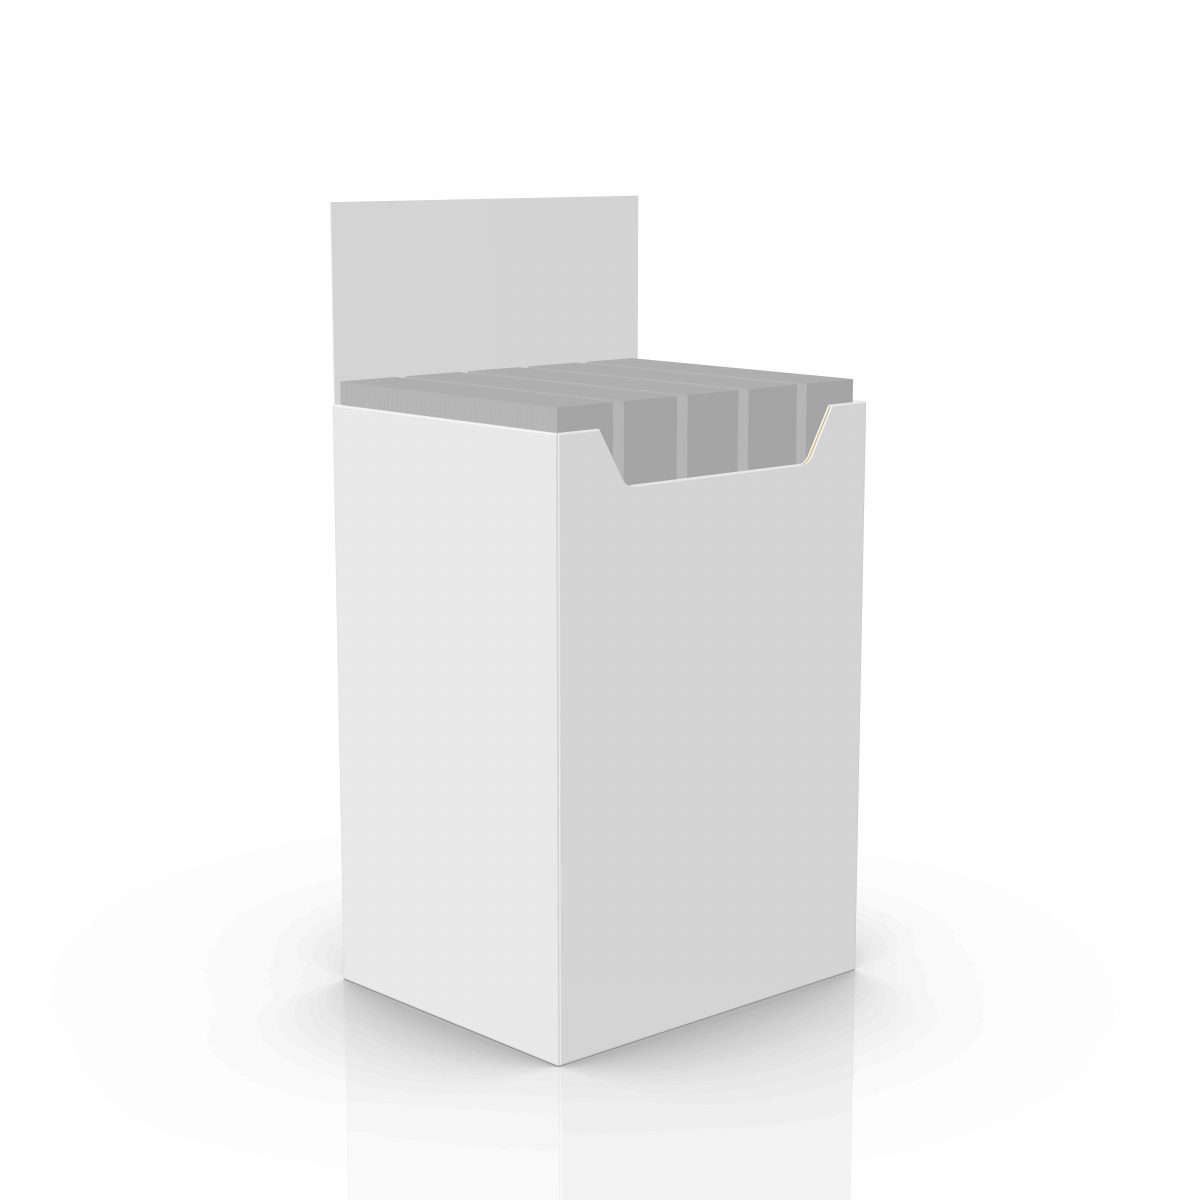 Présentoir de plancher en carton, dump bin (benne), avec en-tête - visuel 3d avec produits